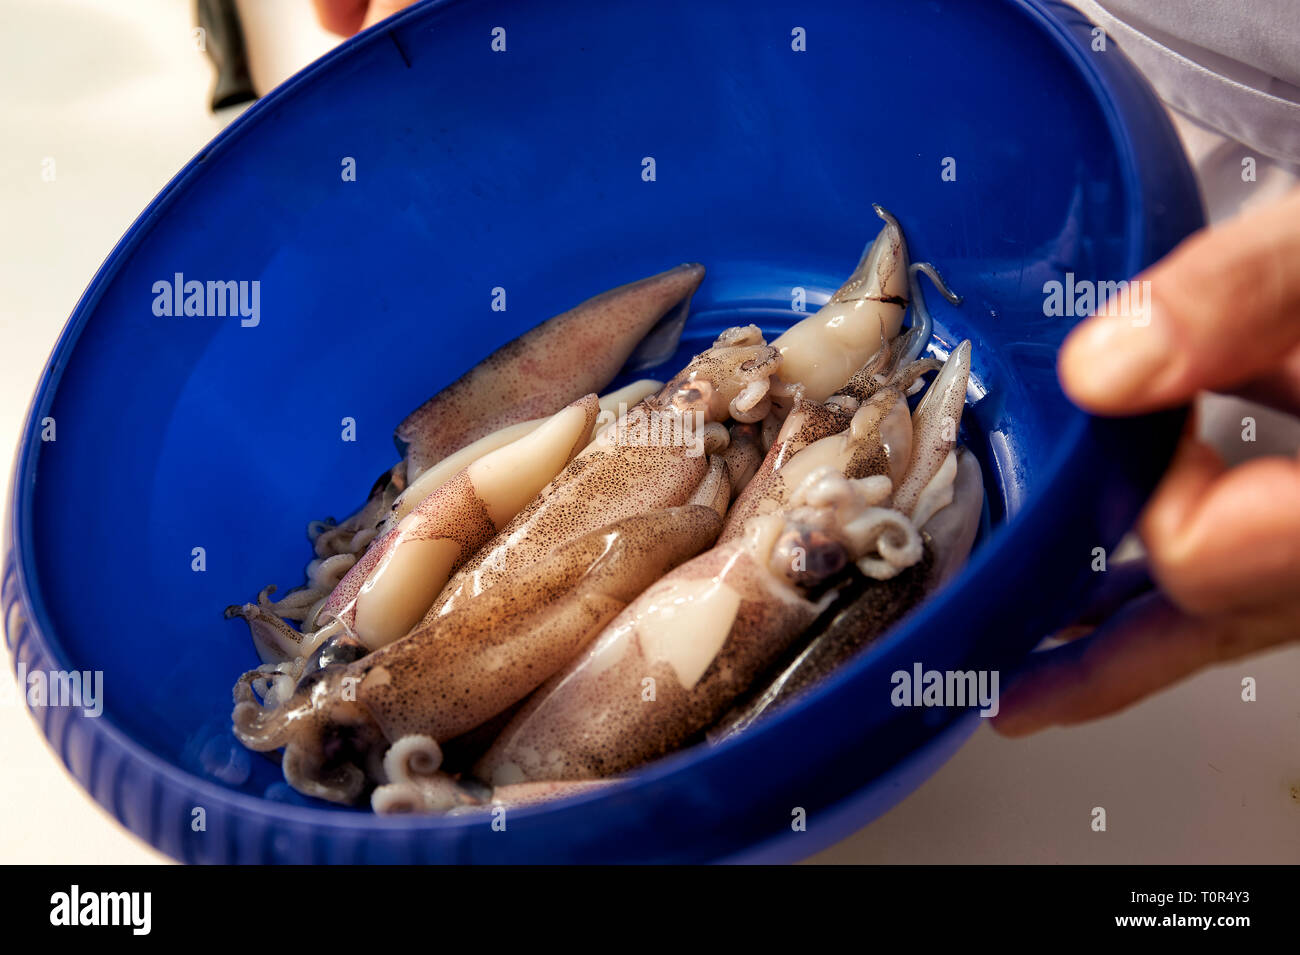 Octopuse liegen in einer blauen Schale und werden gleich gewaschen bevor sie kuechenfertig gemacht werden. Stock Photo